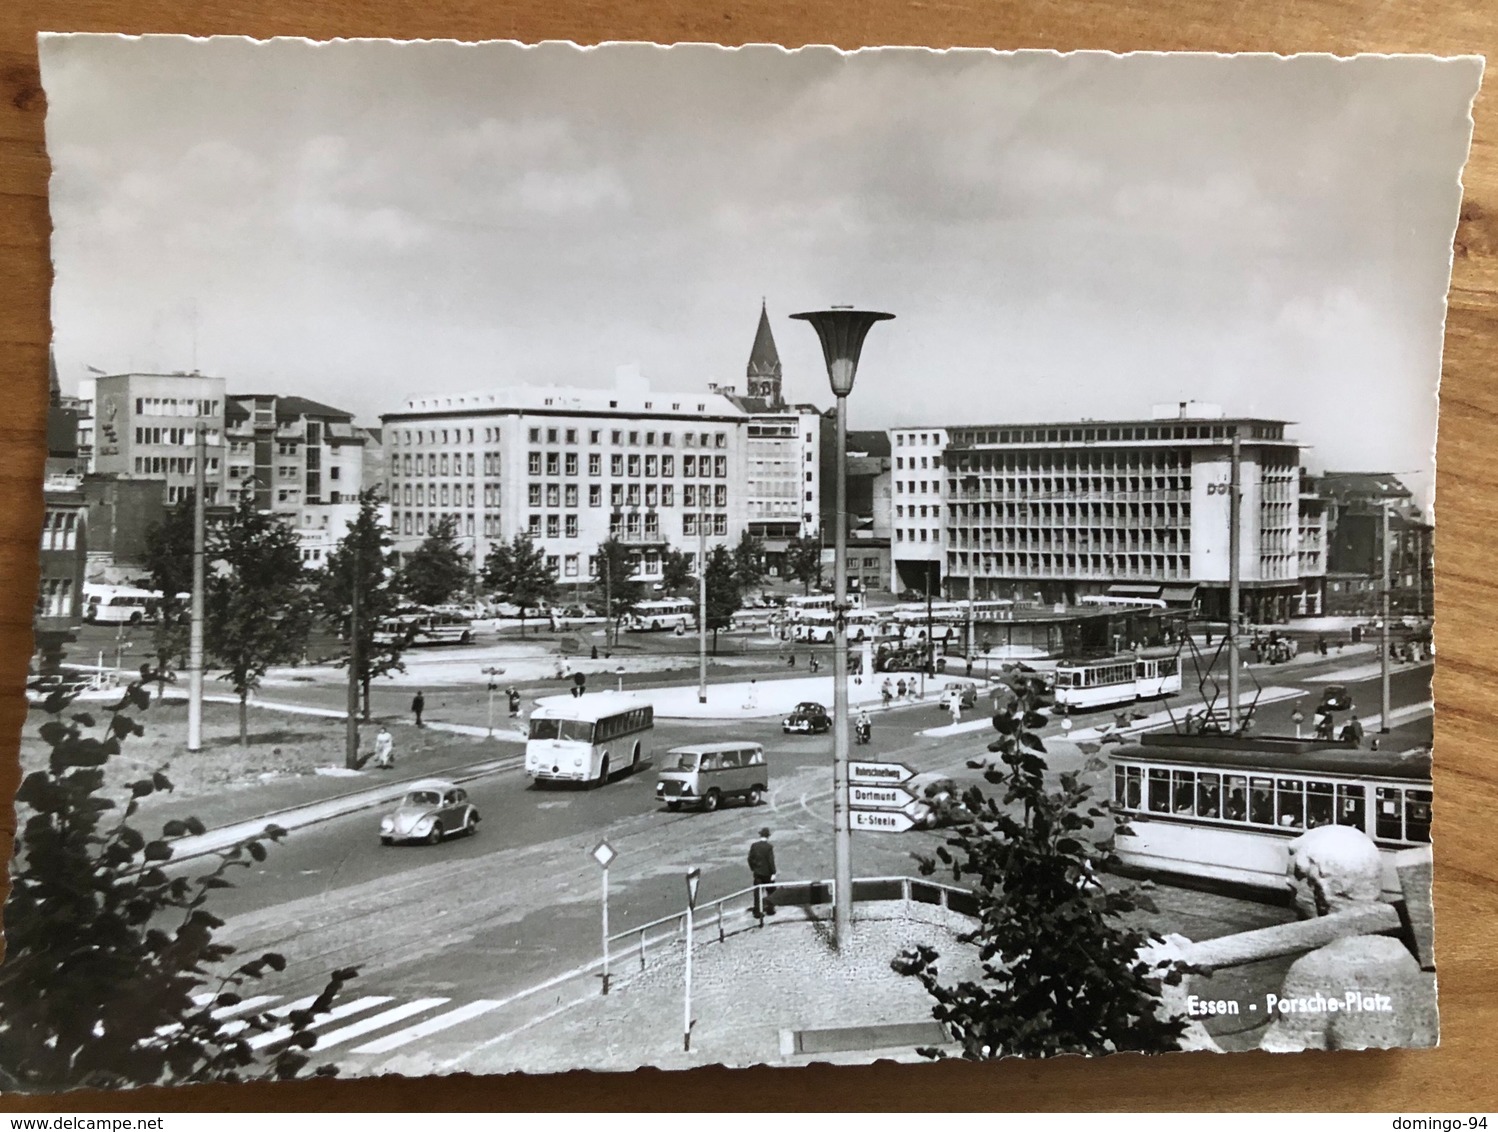 Essen Porsche-Platz Mit Autos Und Bus 1957 - Essen